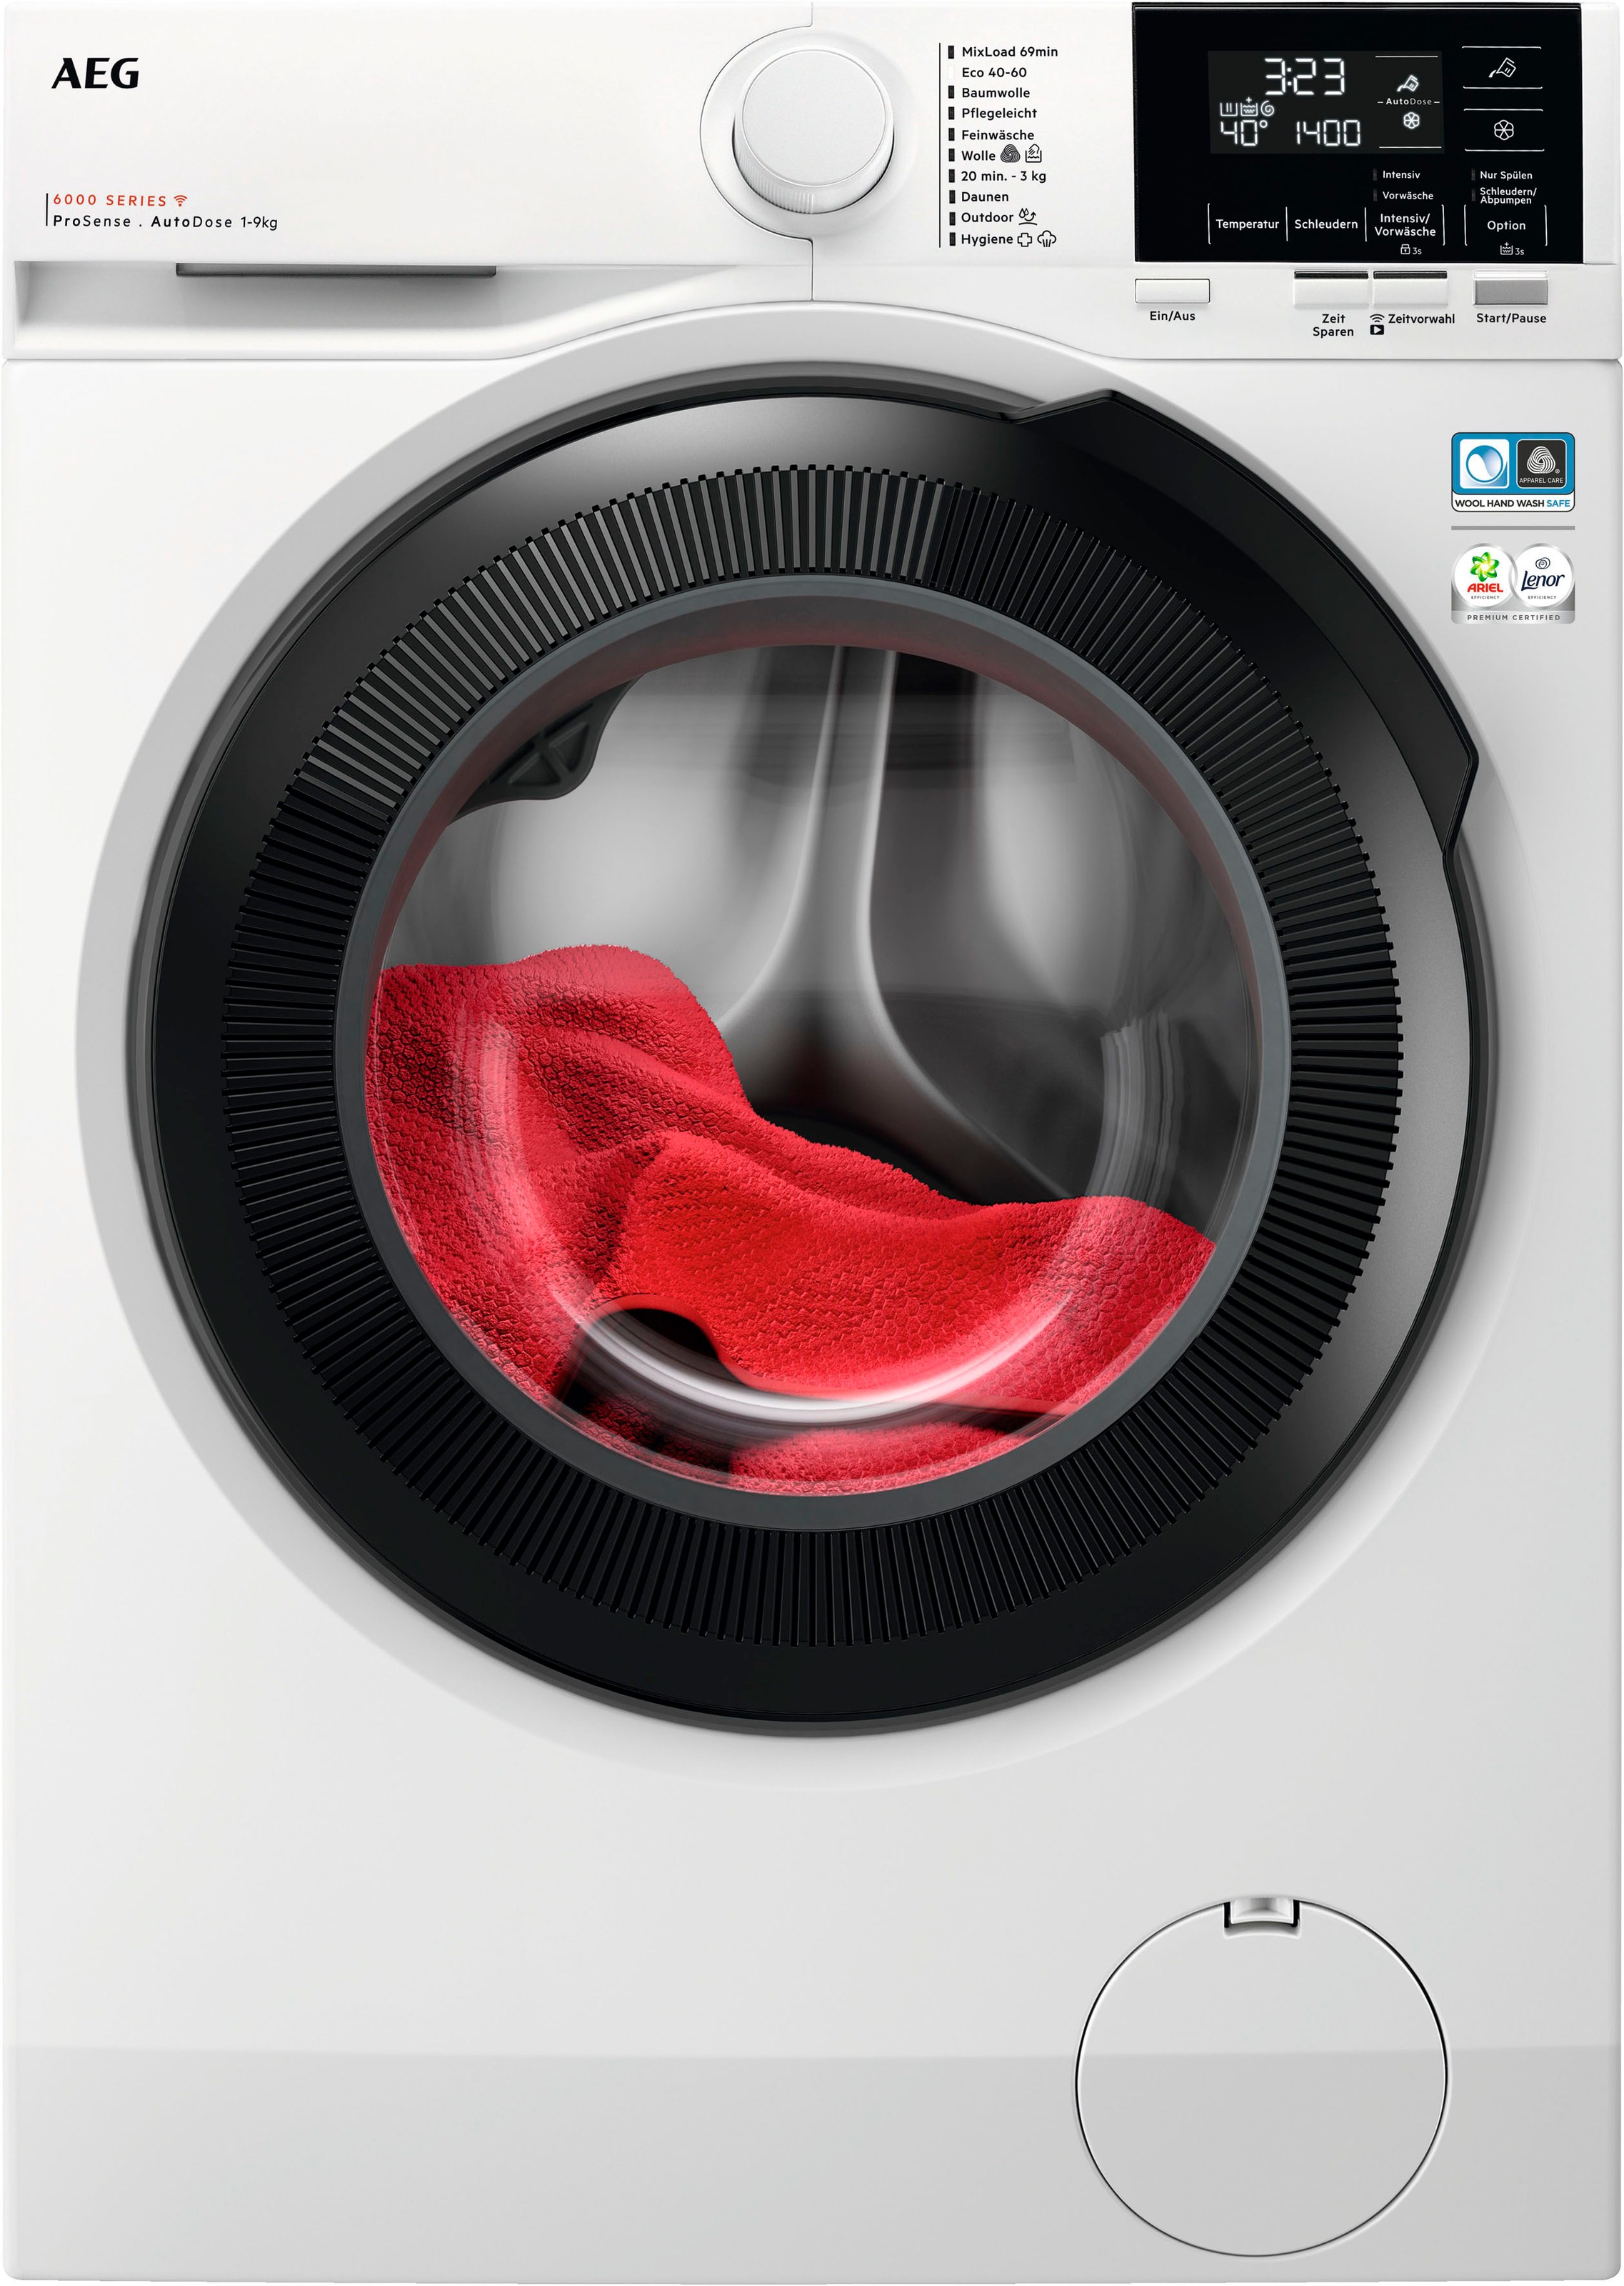 AEG Waschmaschine, LR6D60490 914915144, 9 kg, 1400 U/min, ProSense®  Mengenautomatik​ - spart bis 40% Zeit, Wasser und Energie kaufen bei OTTO